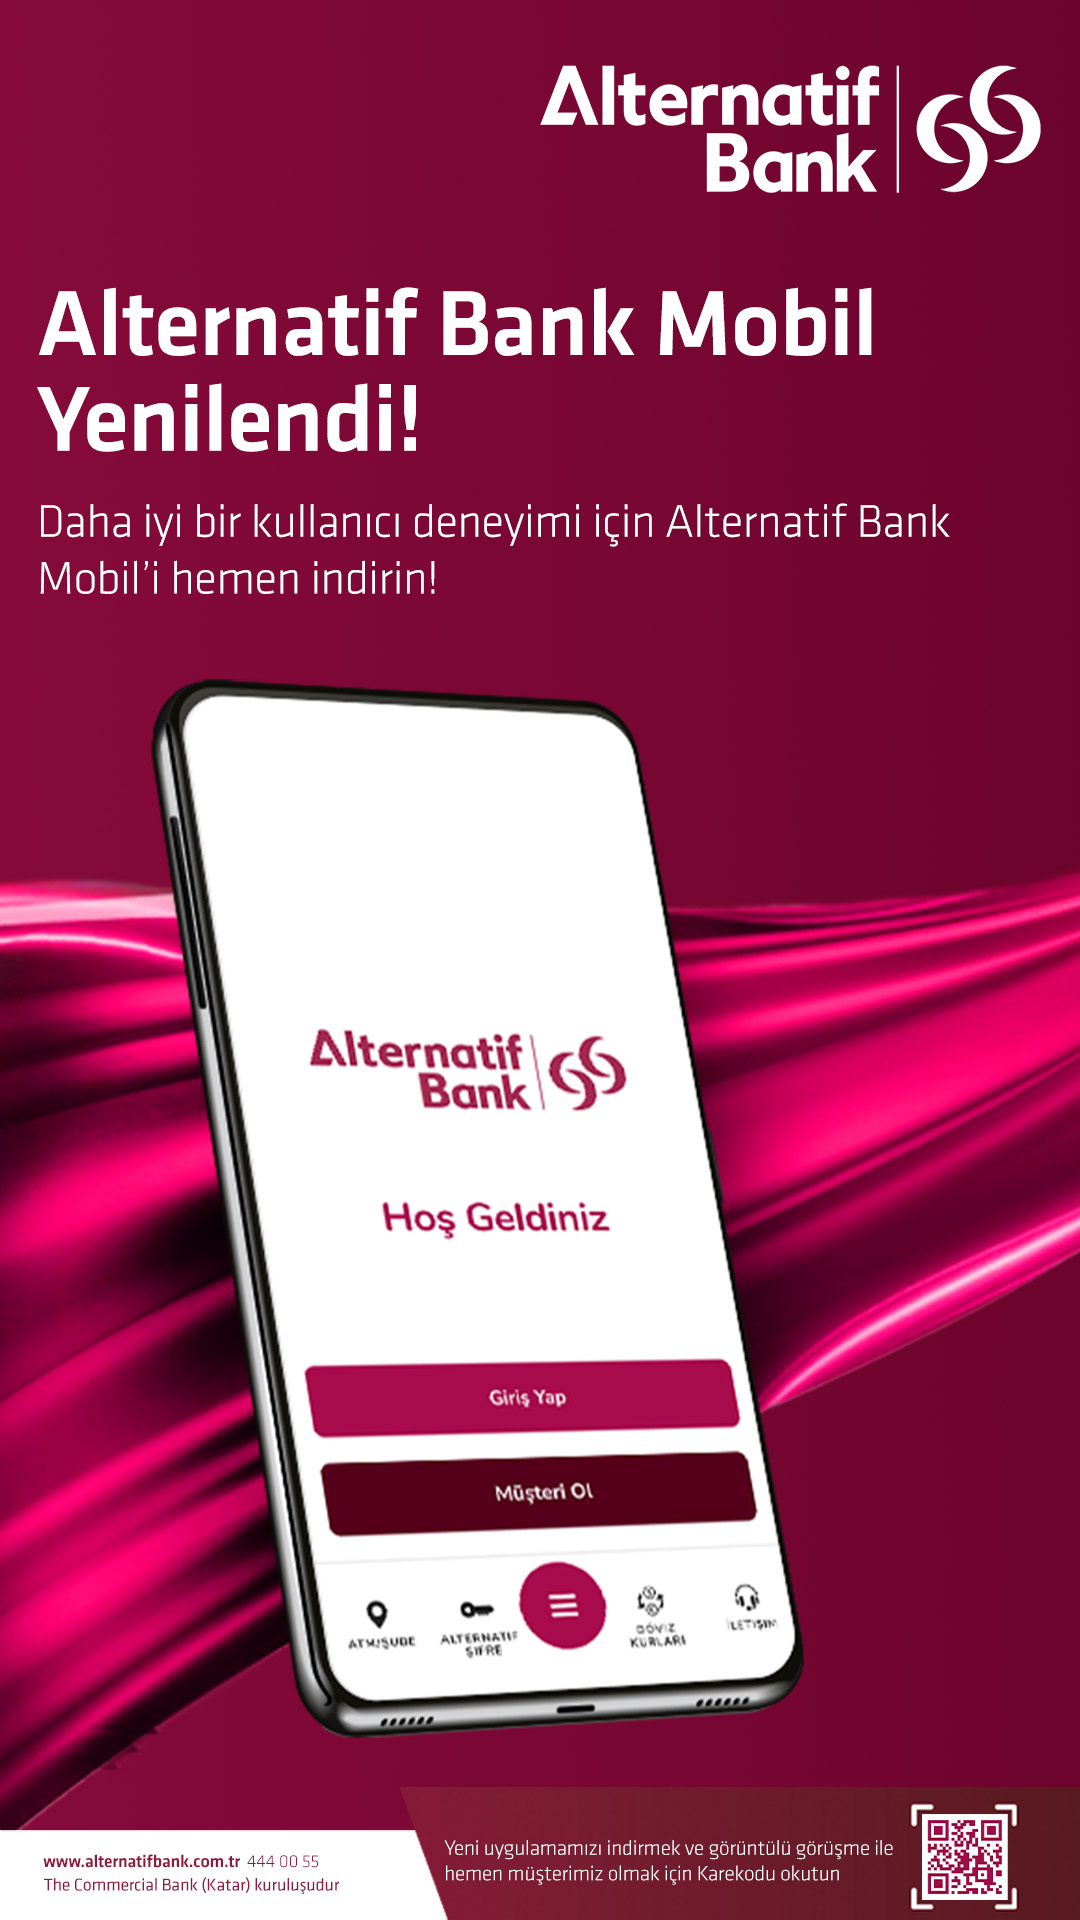 Alternatif Bank yenilenen mobil uygulamasıyla dijital bankacılığın kolaylığını insan dokunuşuyla birleştiriyor